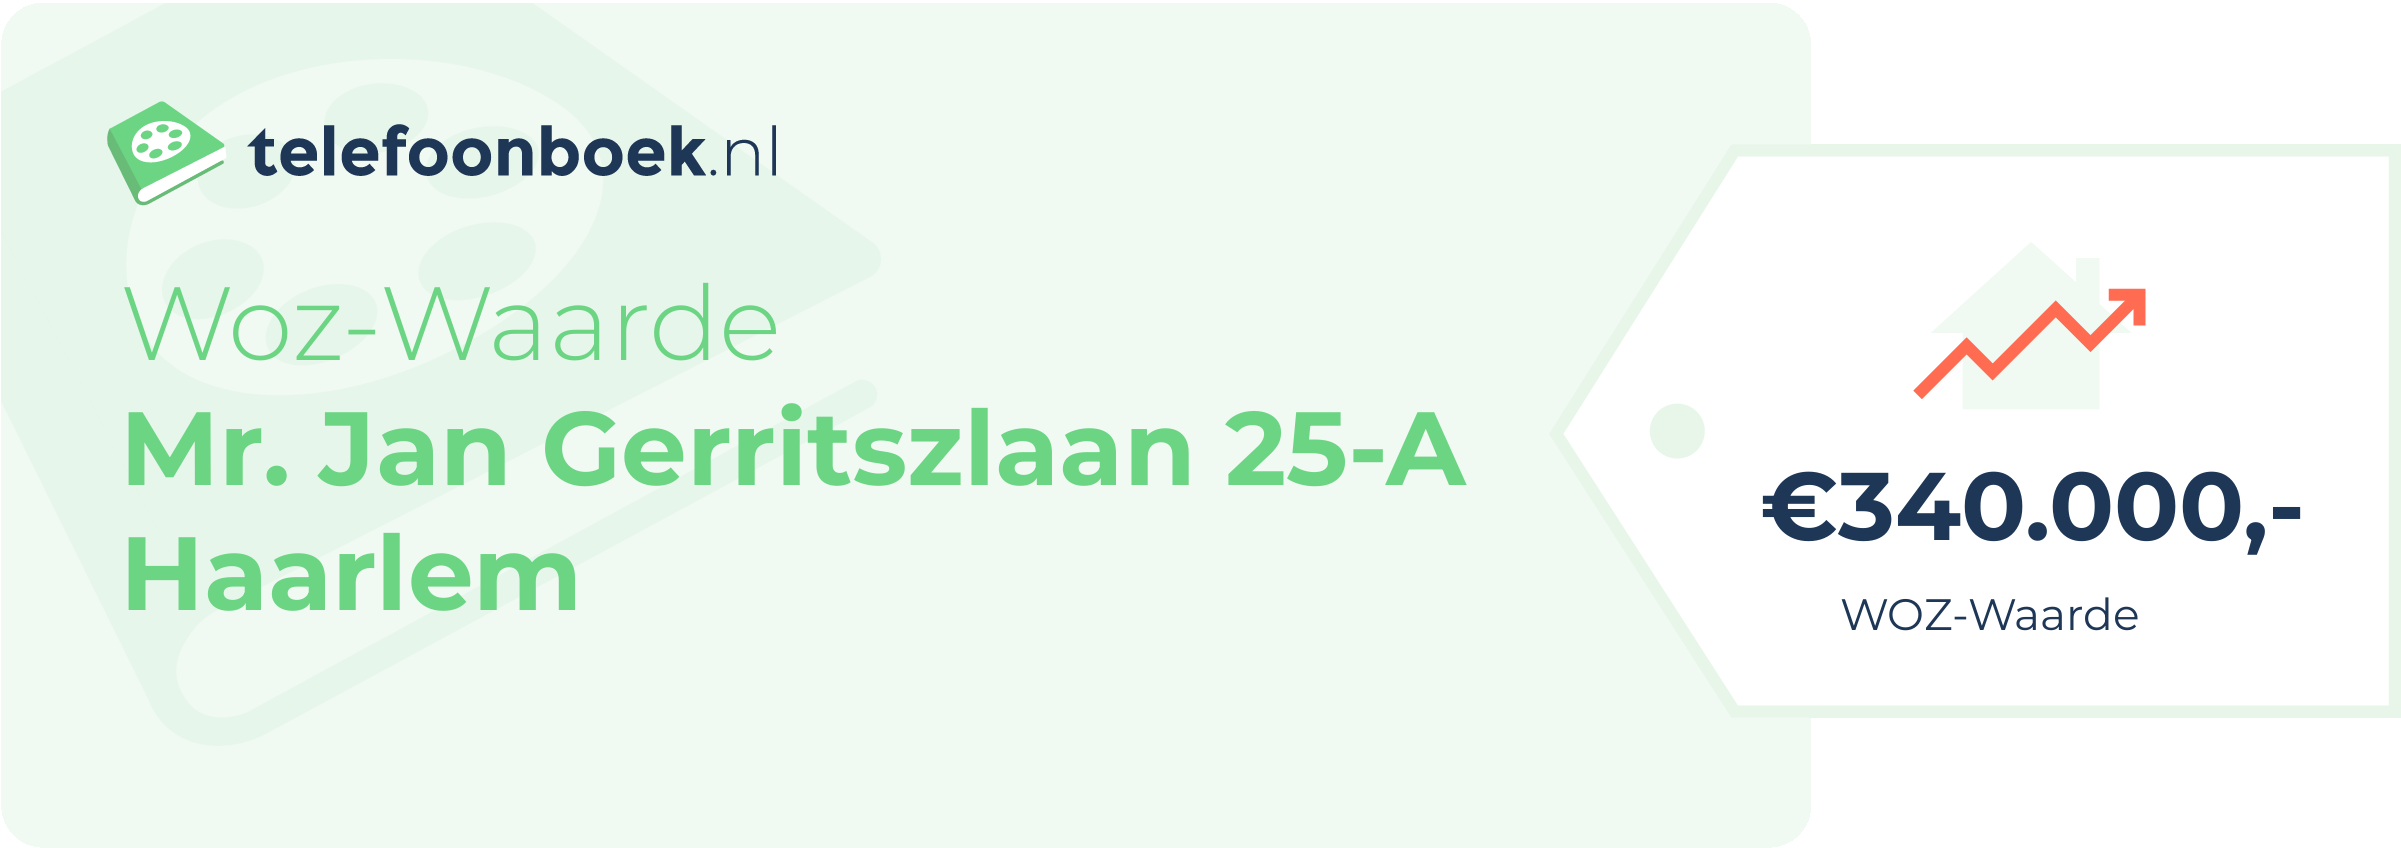 WOZ-waarde Mr. Jan Gerritszlaan 25-A Haarlem